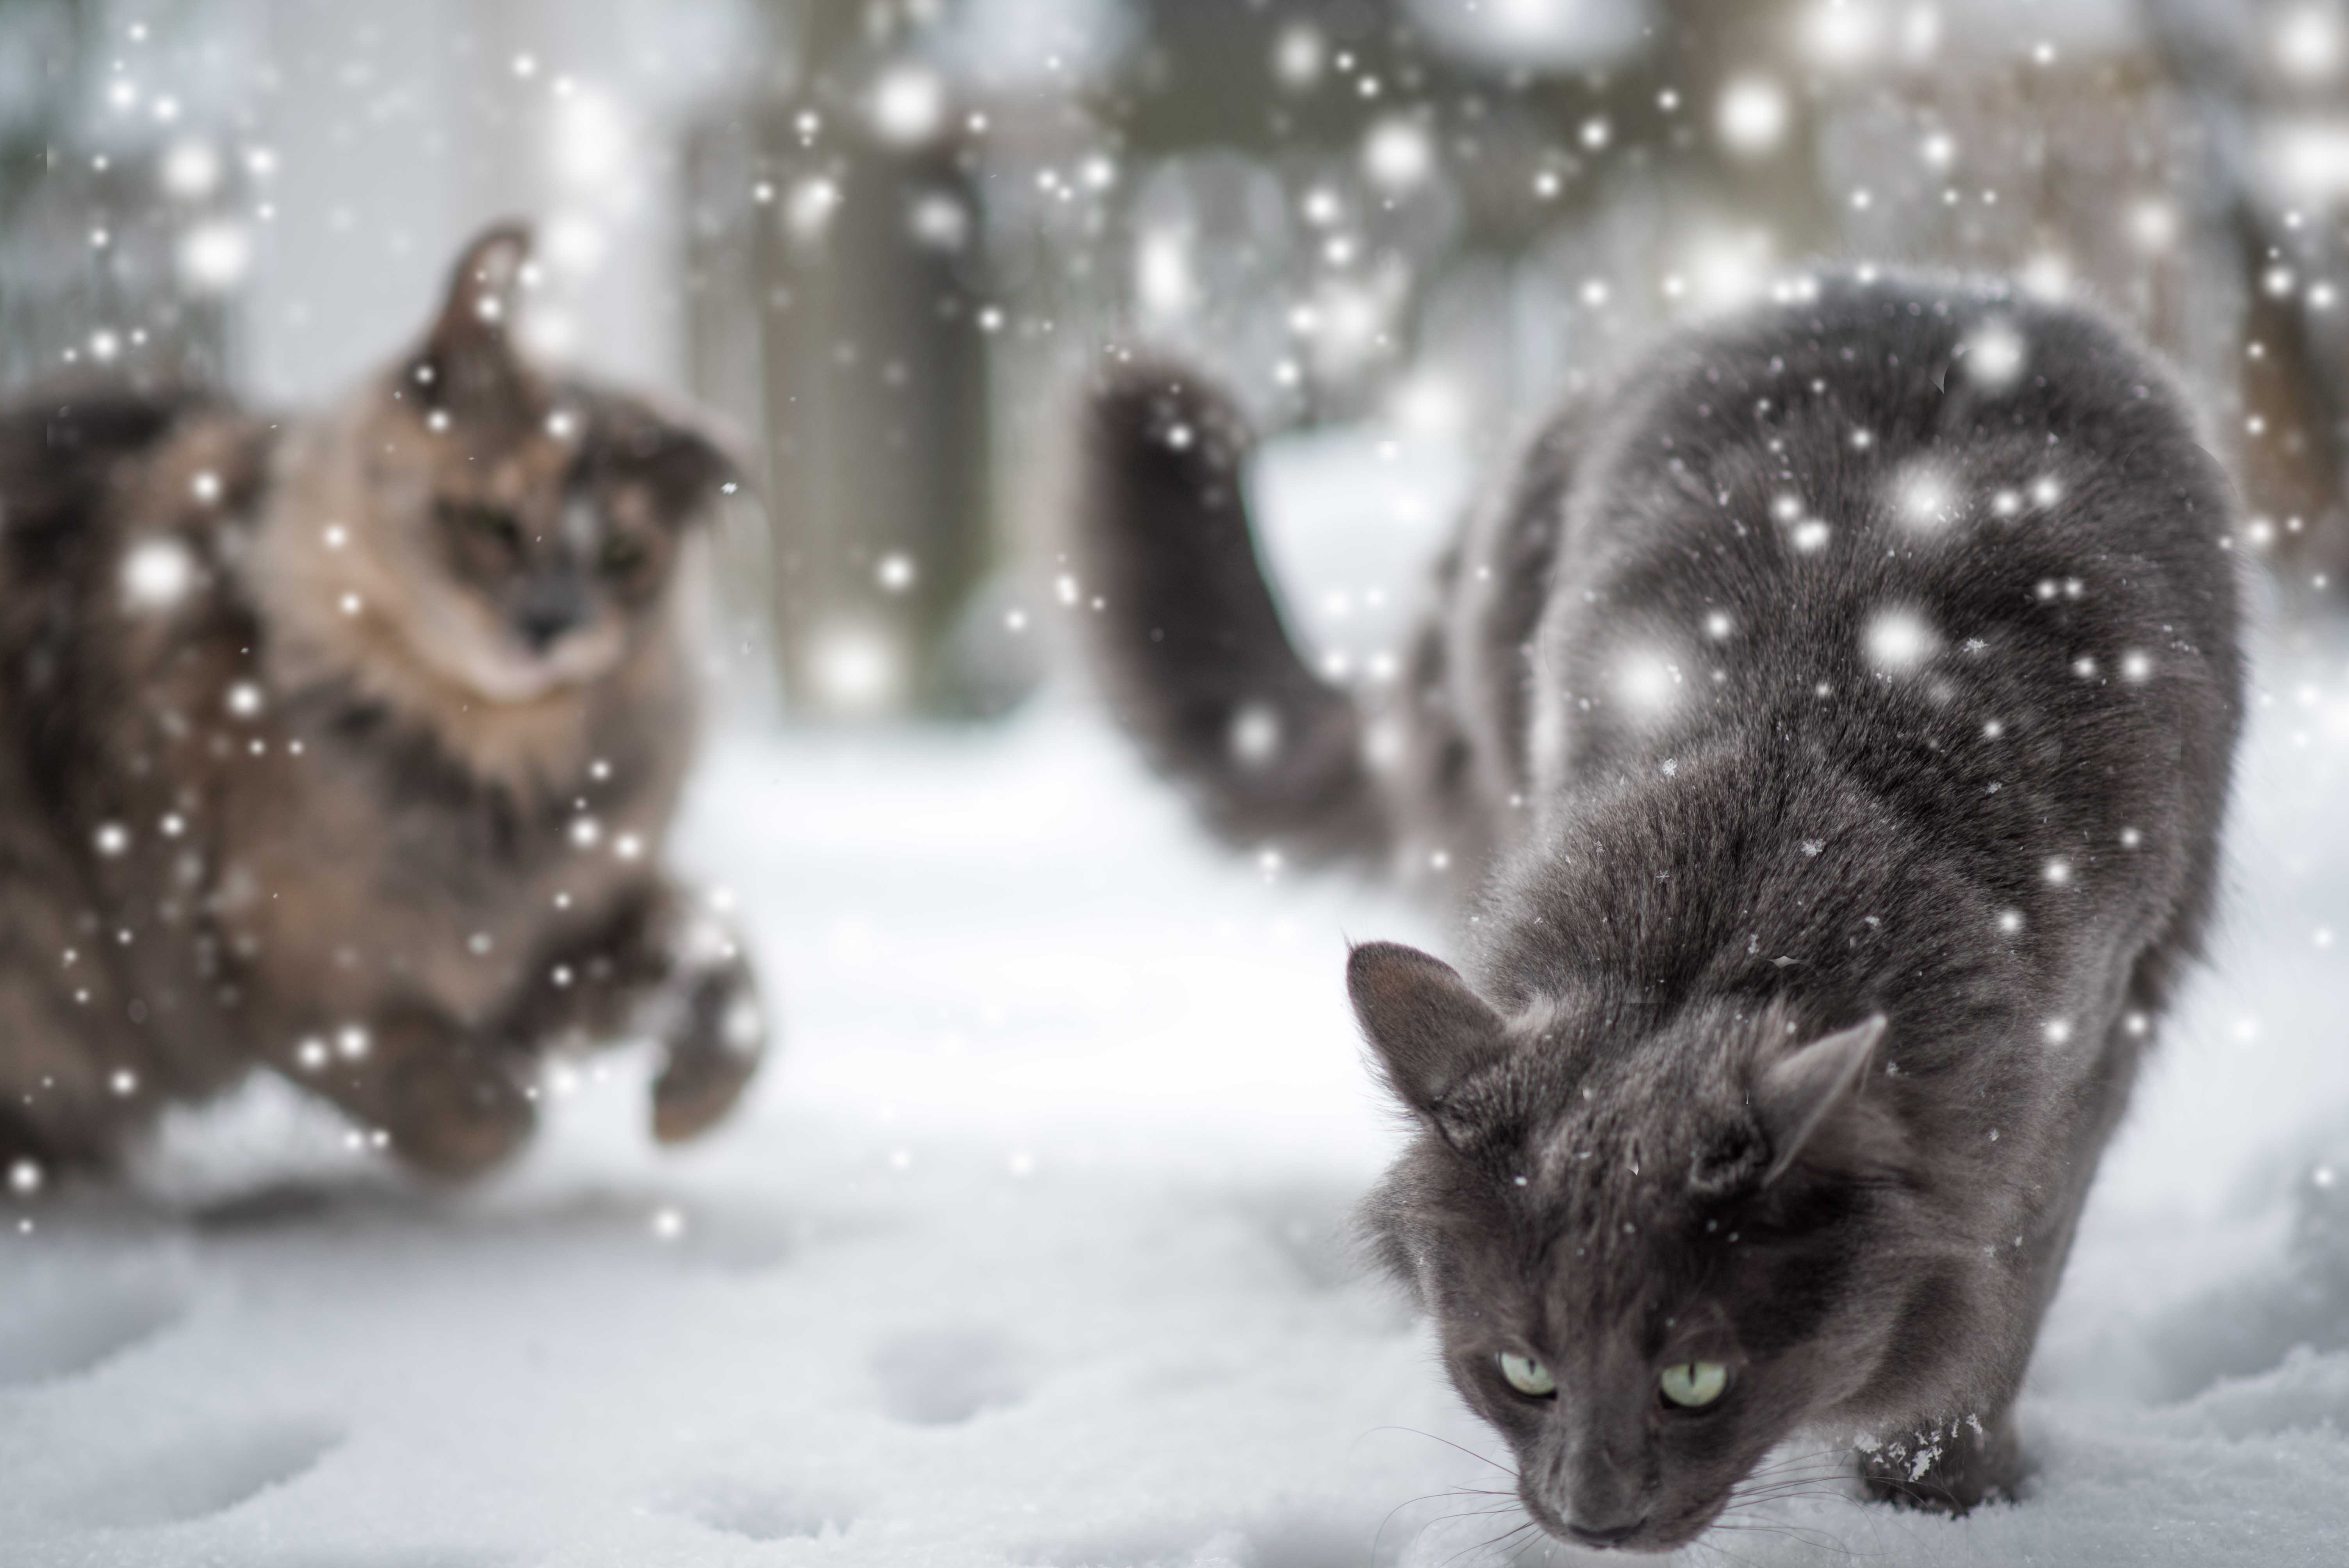 Скачать обои бесплатно Животные, Зима, Кошка, Снегопад, Кошки картинка на рабочий стол ПК